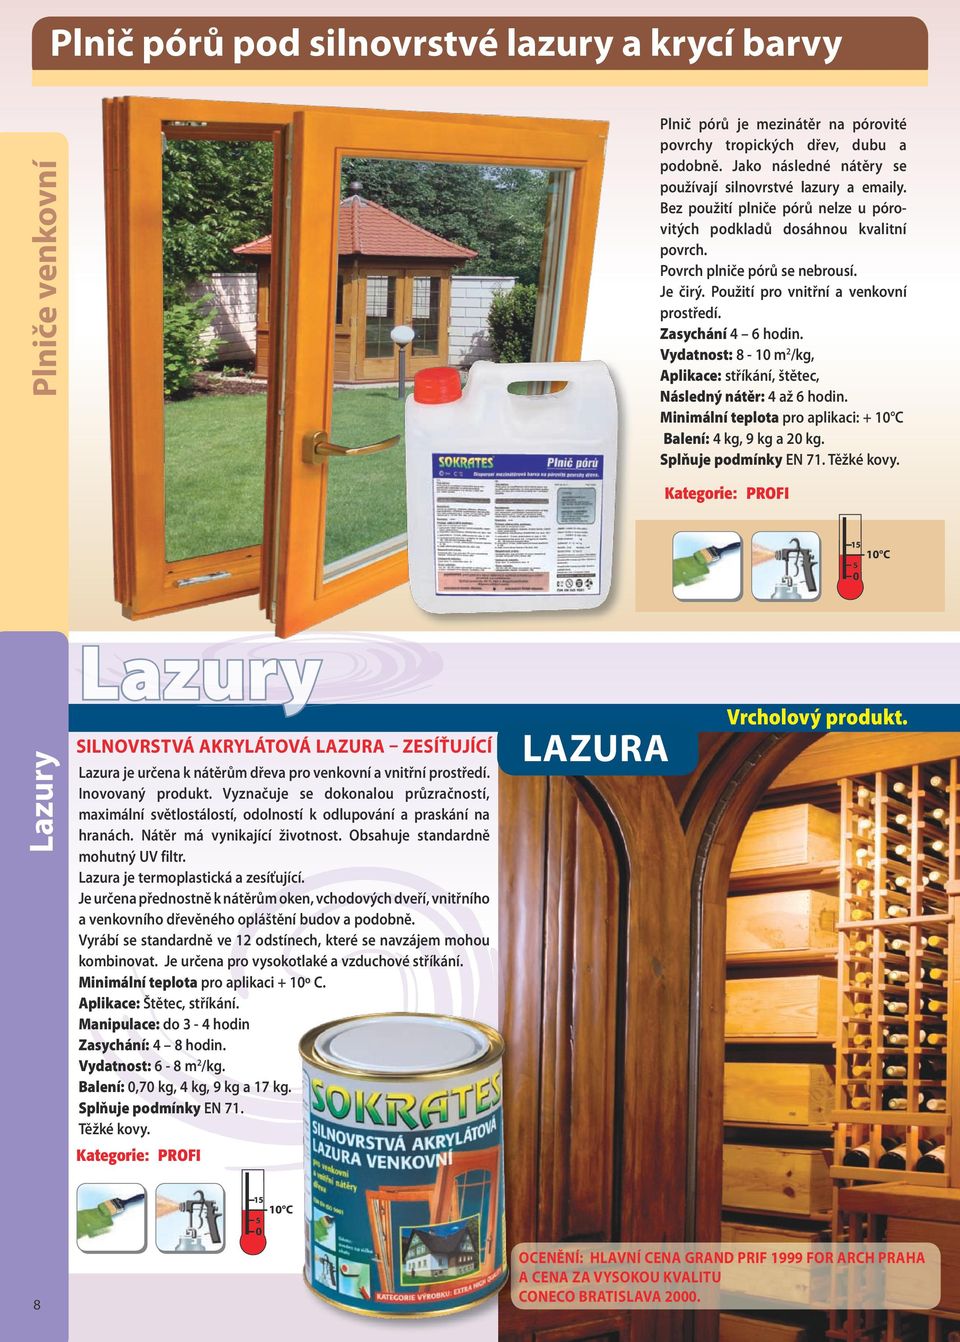 Lazura je termoplastická a zesíťující. Je určena přednostně k nátěrům oken, vchodových dveří, vnitřního a venkovního dřevěného opláštění budov a podobně.